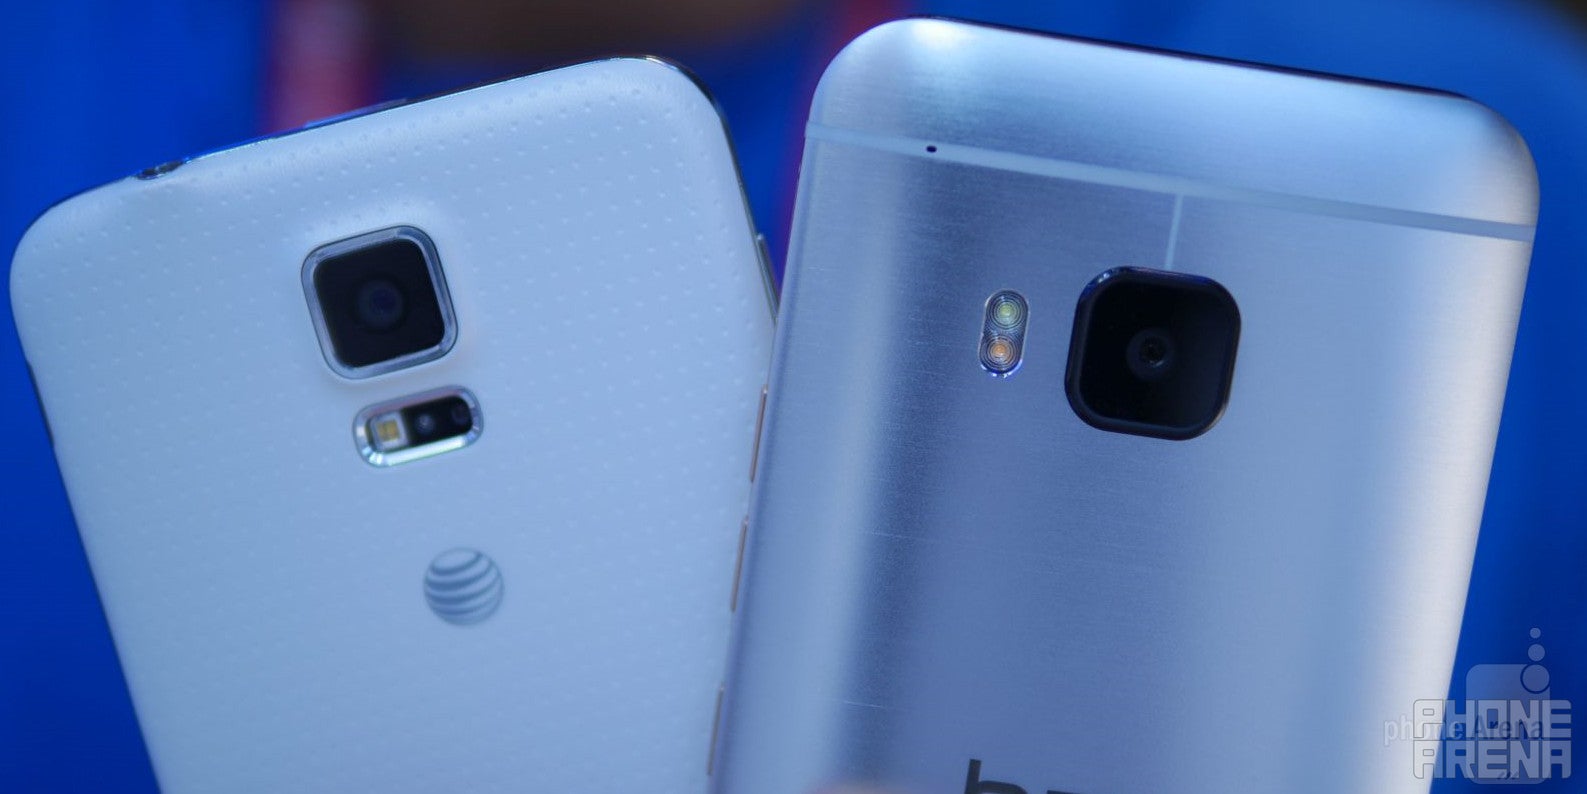 HTC One M9 versus Samsung Galaxy S5: first look